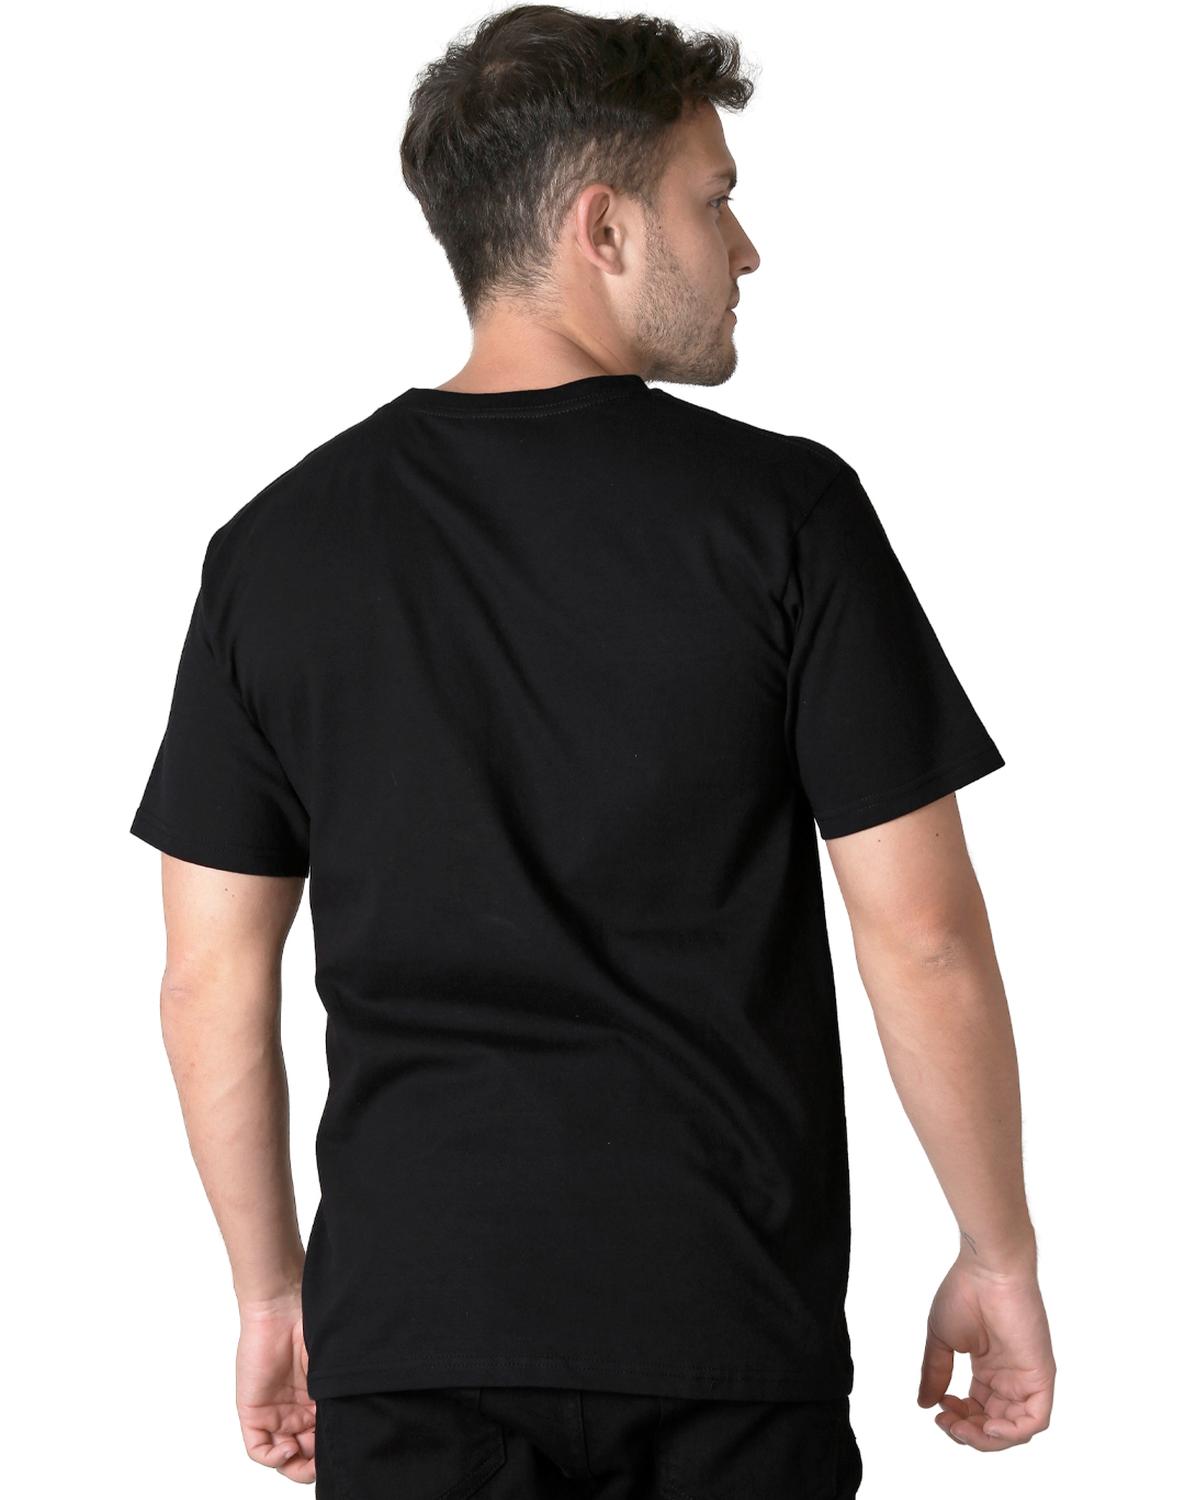 Playera Moda Camiseta Hombre Negro Toxic 51604615